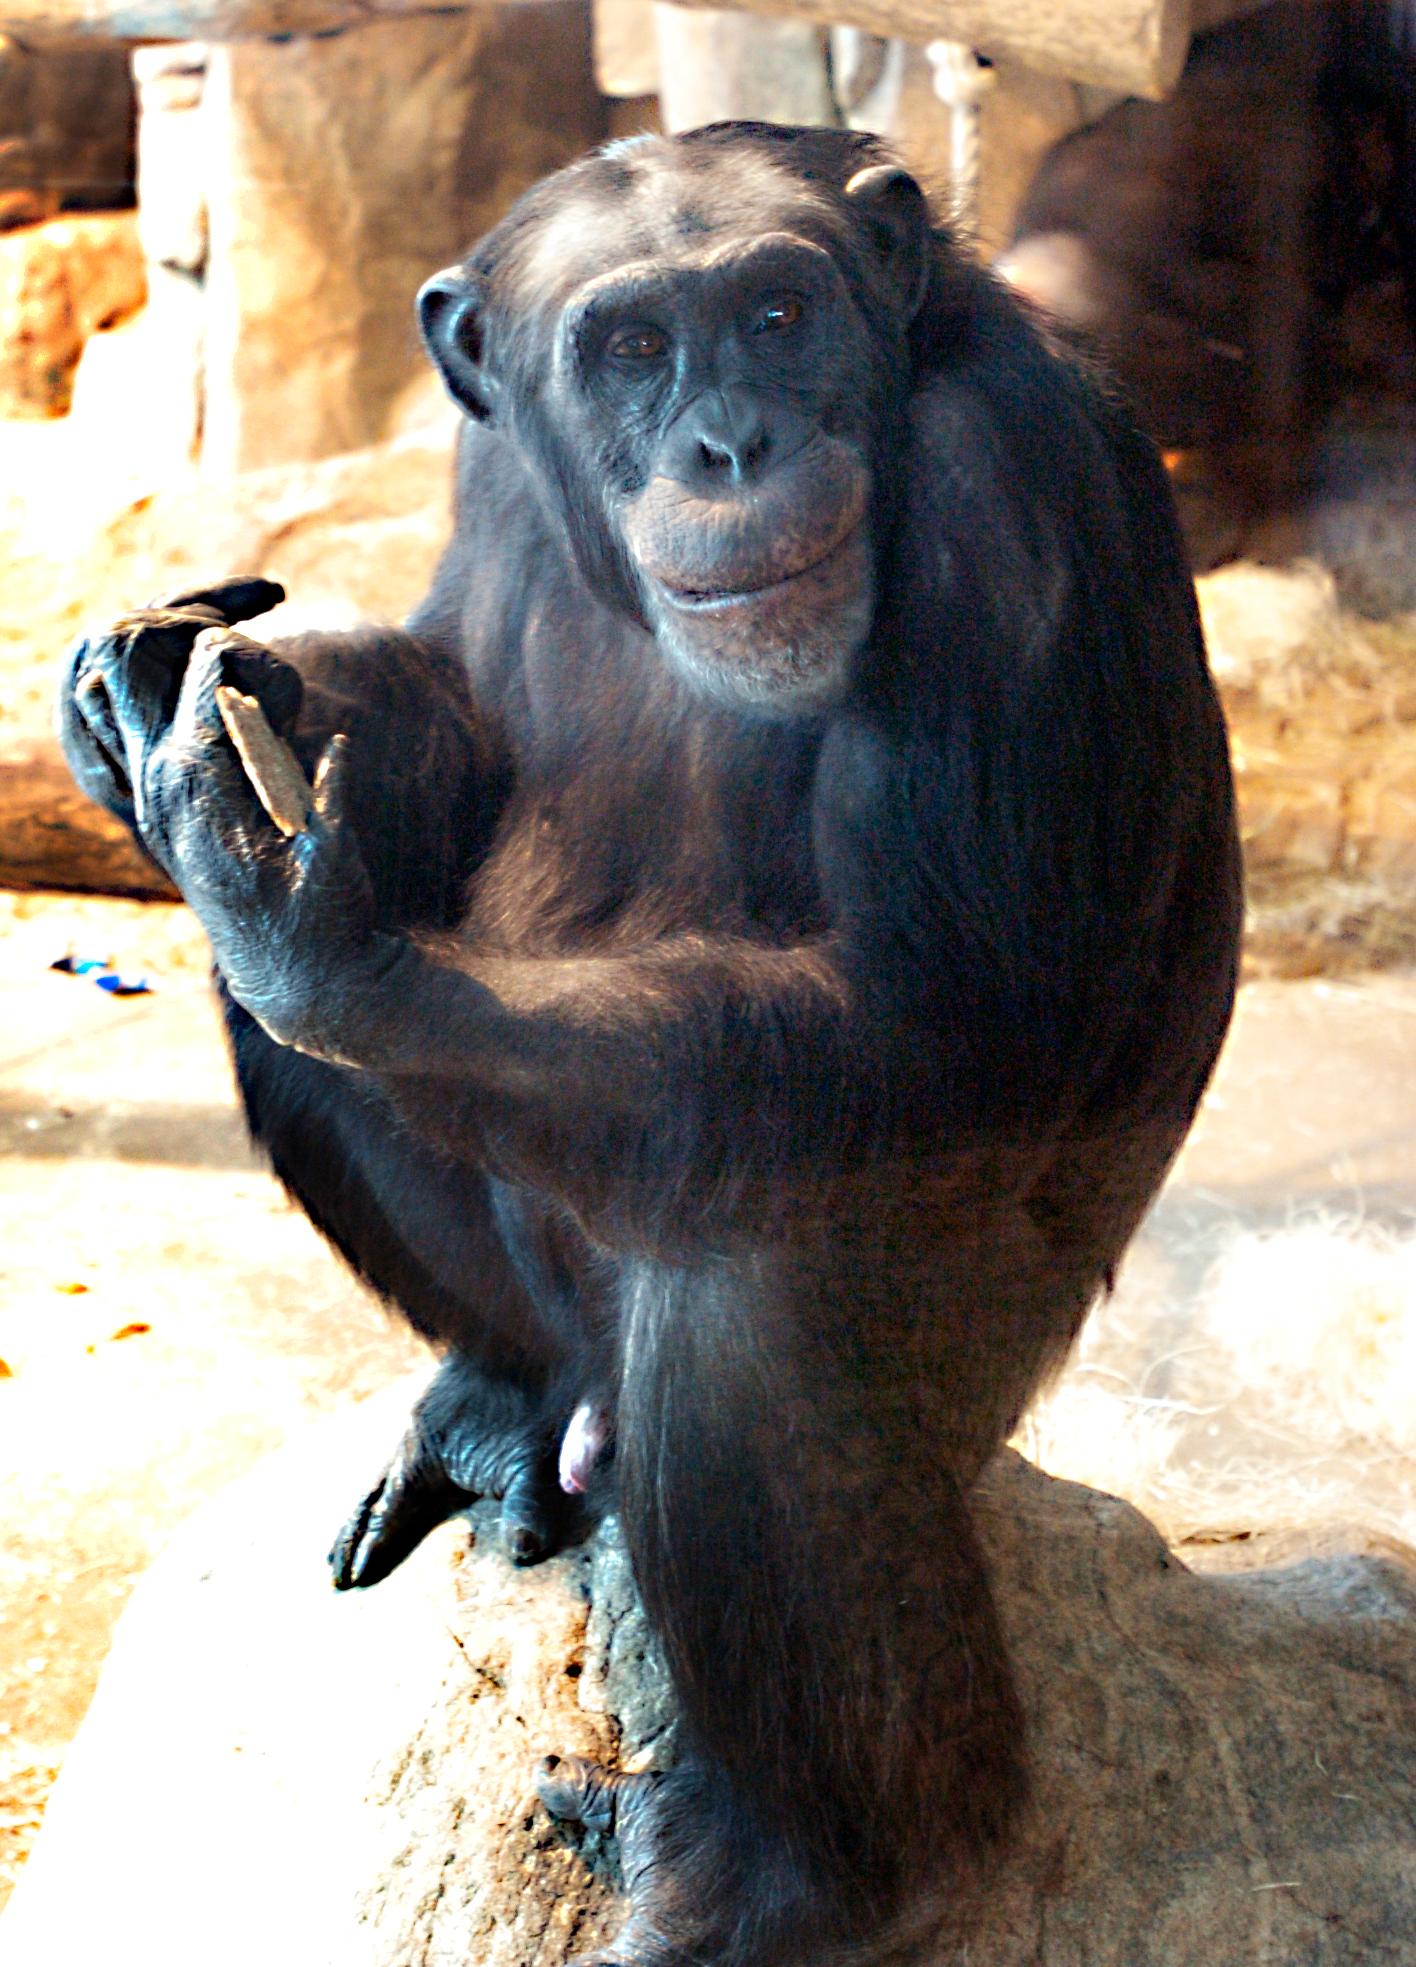 Santino, fotograferad 2009, är en av dem som ligger på golvet i schimpanshuset och kan vara död.